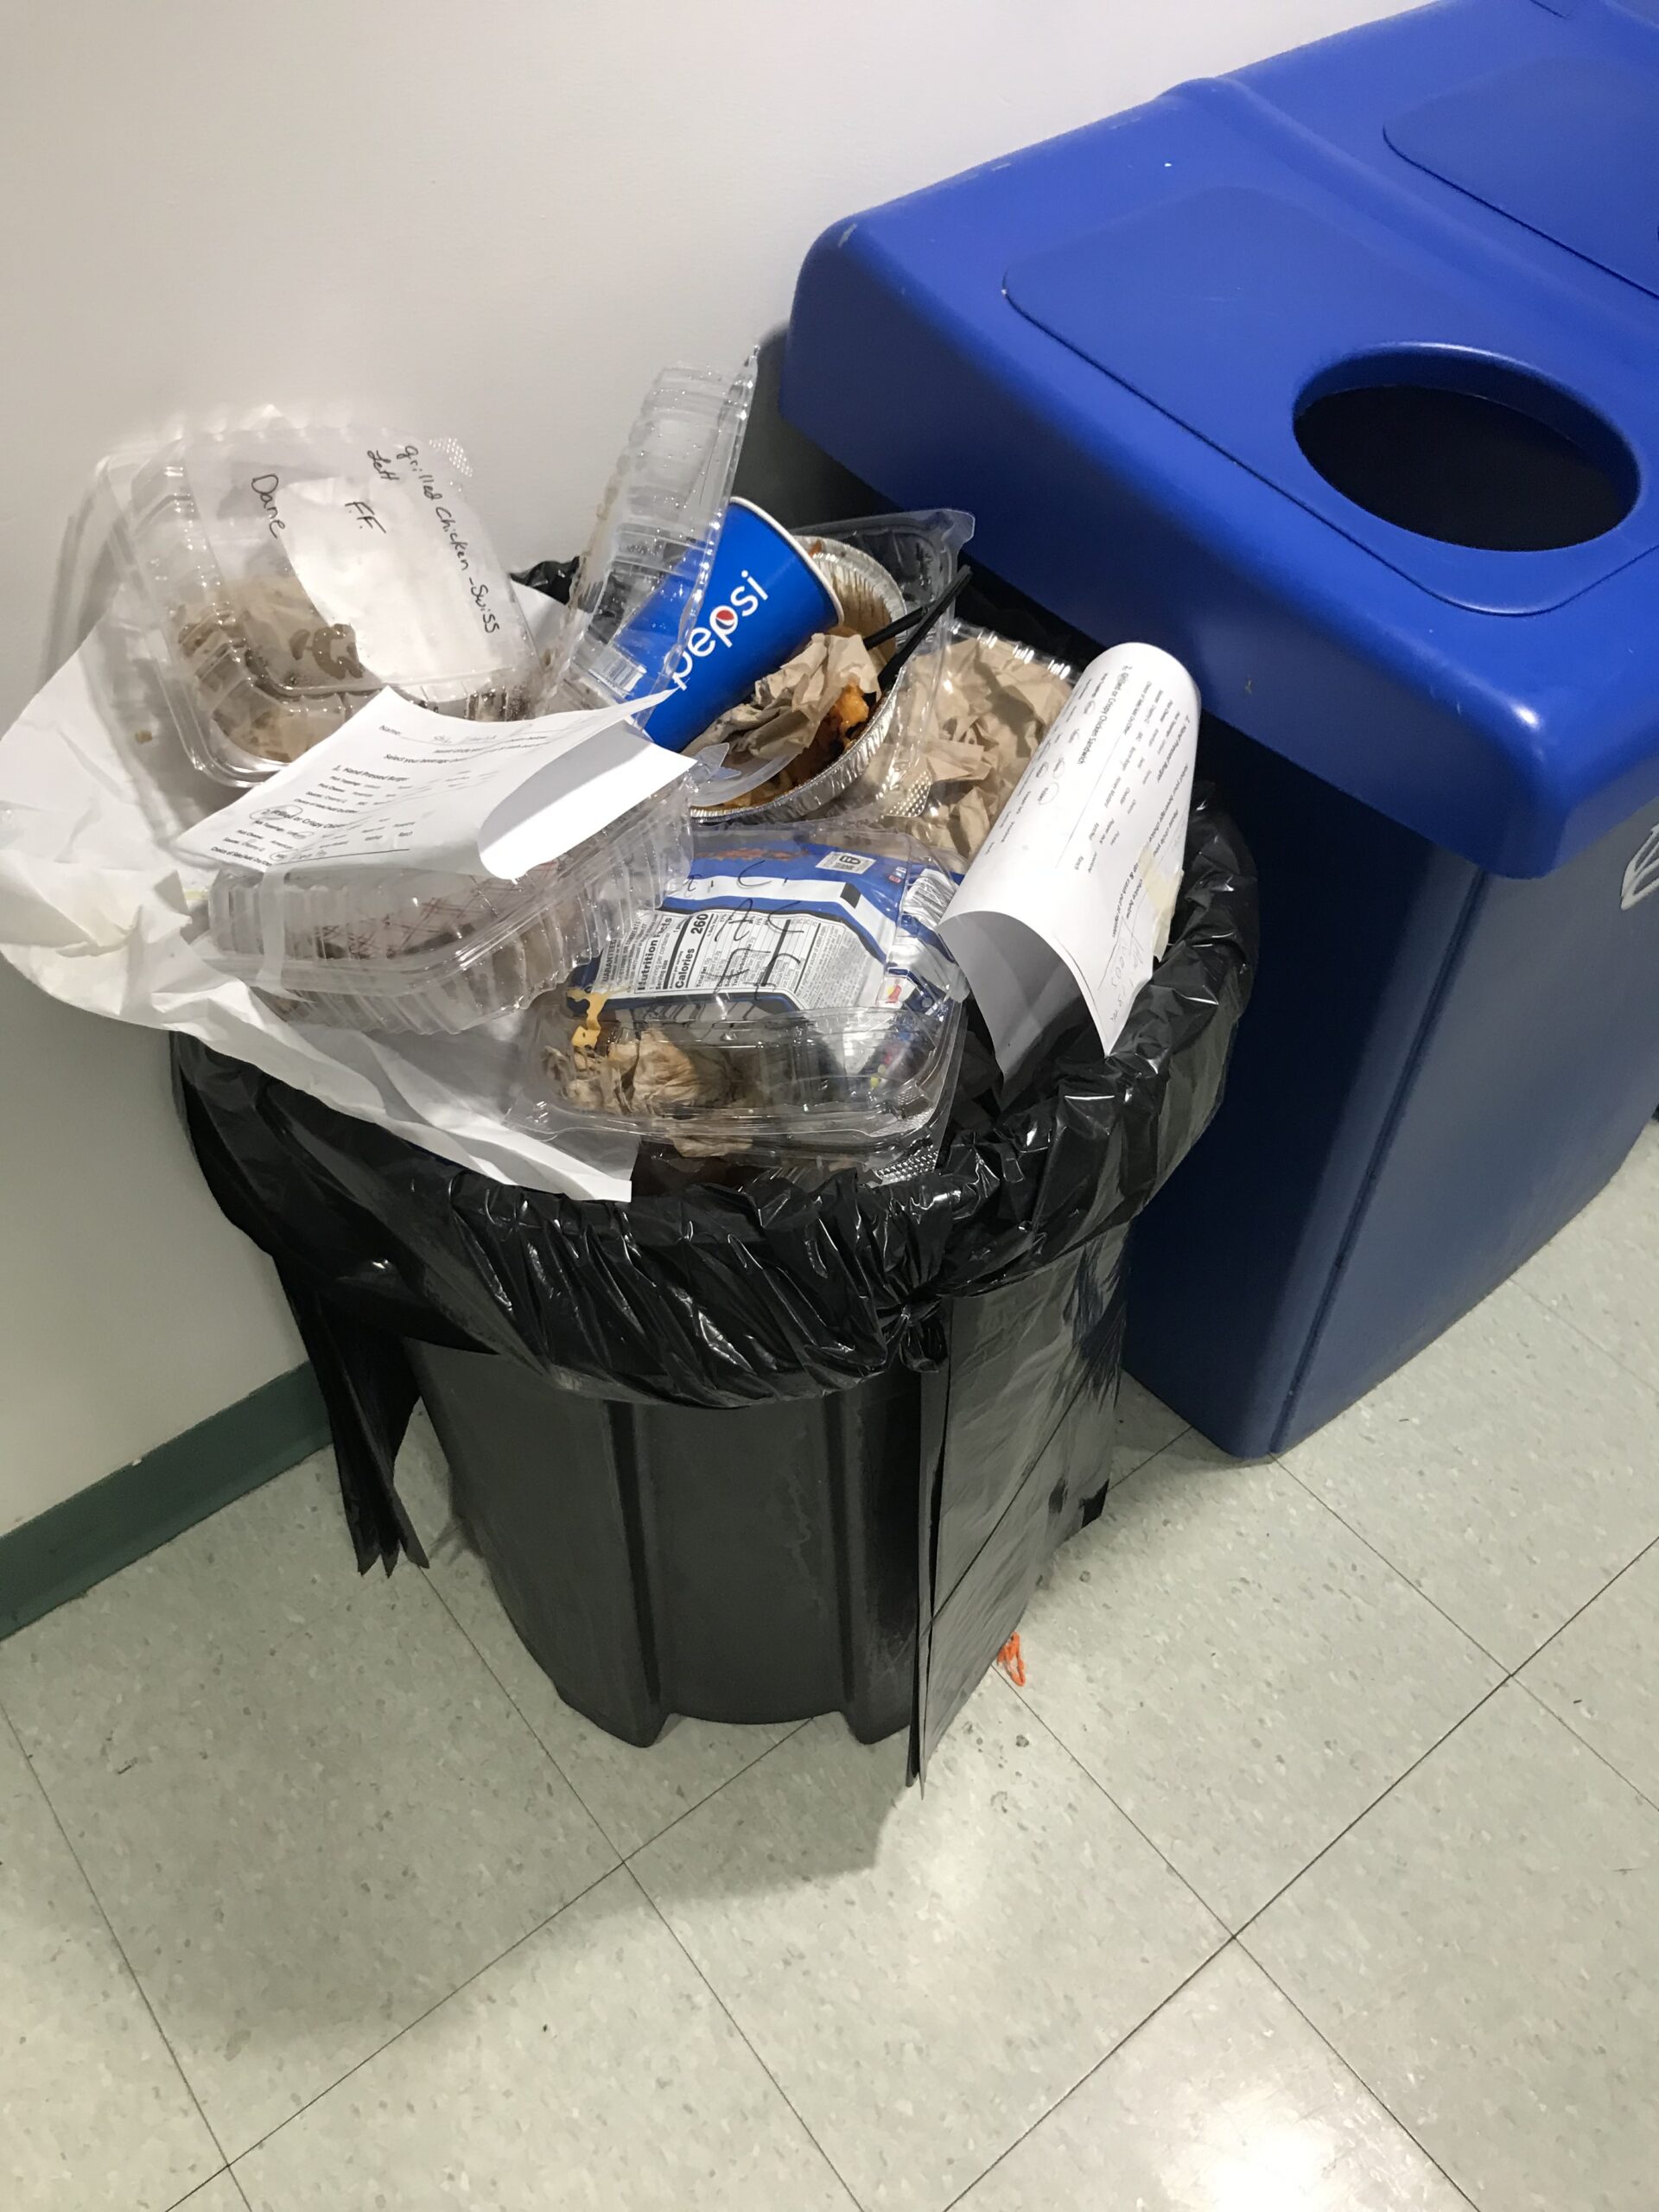 Overflowing Trash Bin